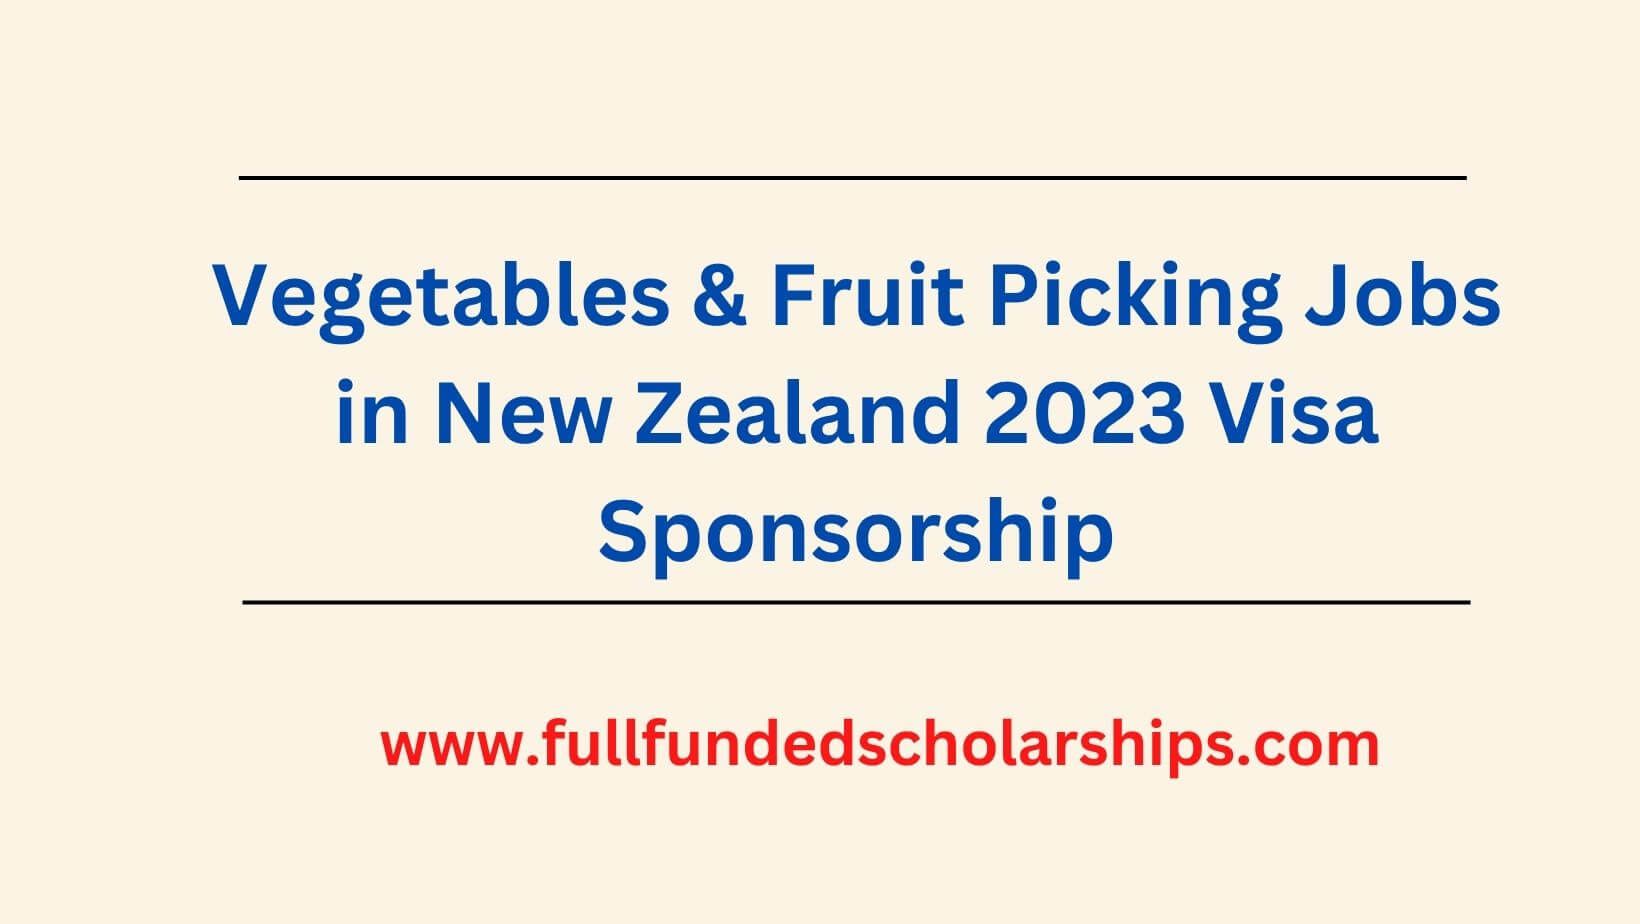 Vegetables & Fruit Picking Jobs in New Zealand 2023 Visa Sponsorship